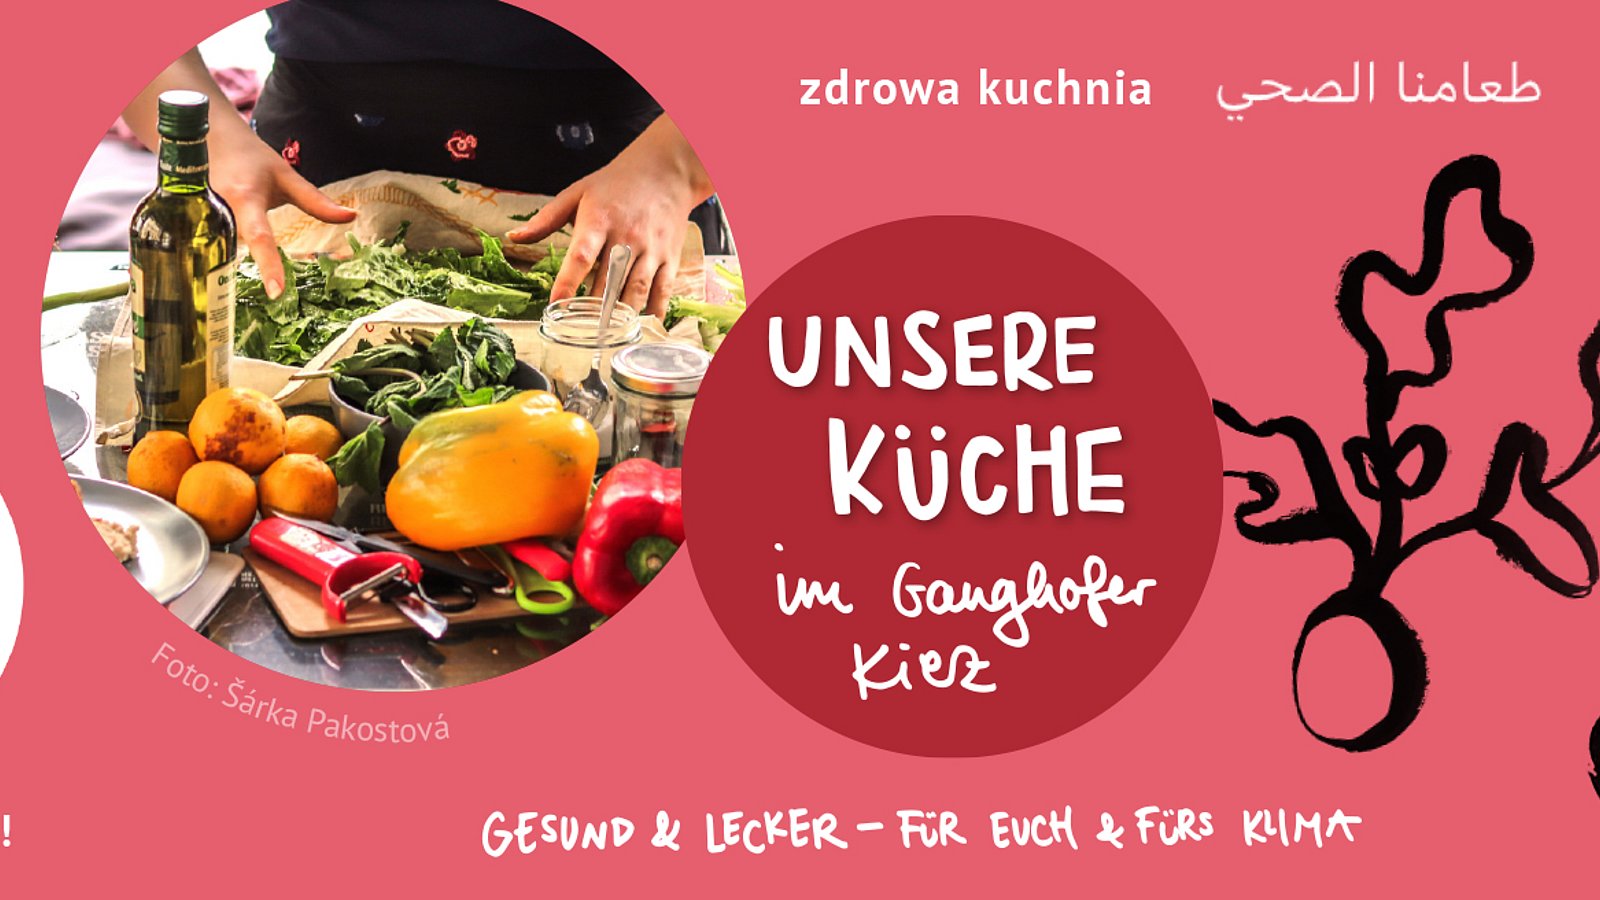 Auf dem Banner steht "Unsere Küche im Ganghofer Kiez" und ein Bild mit Gemüse ist abgebildet.